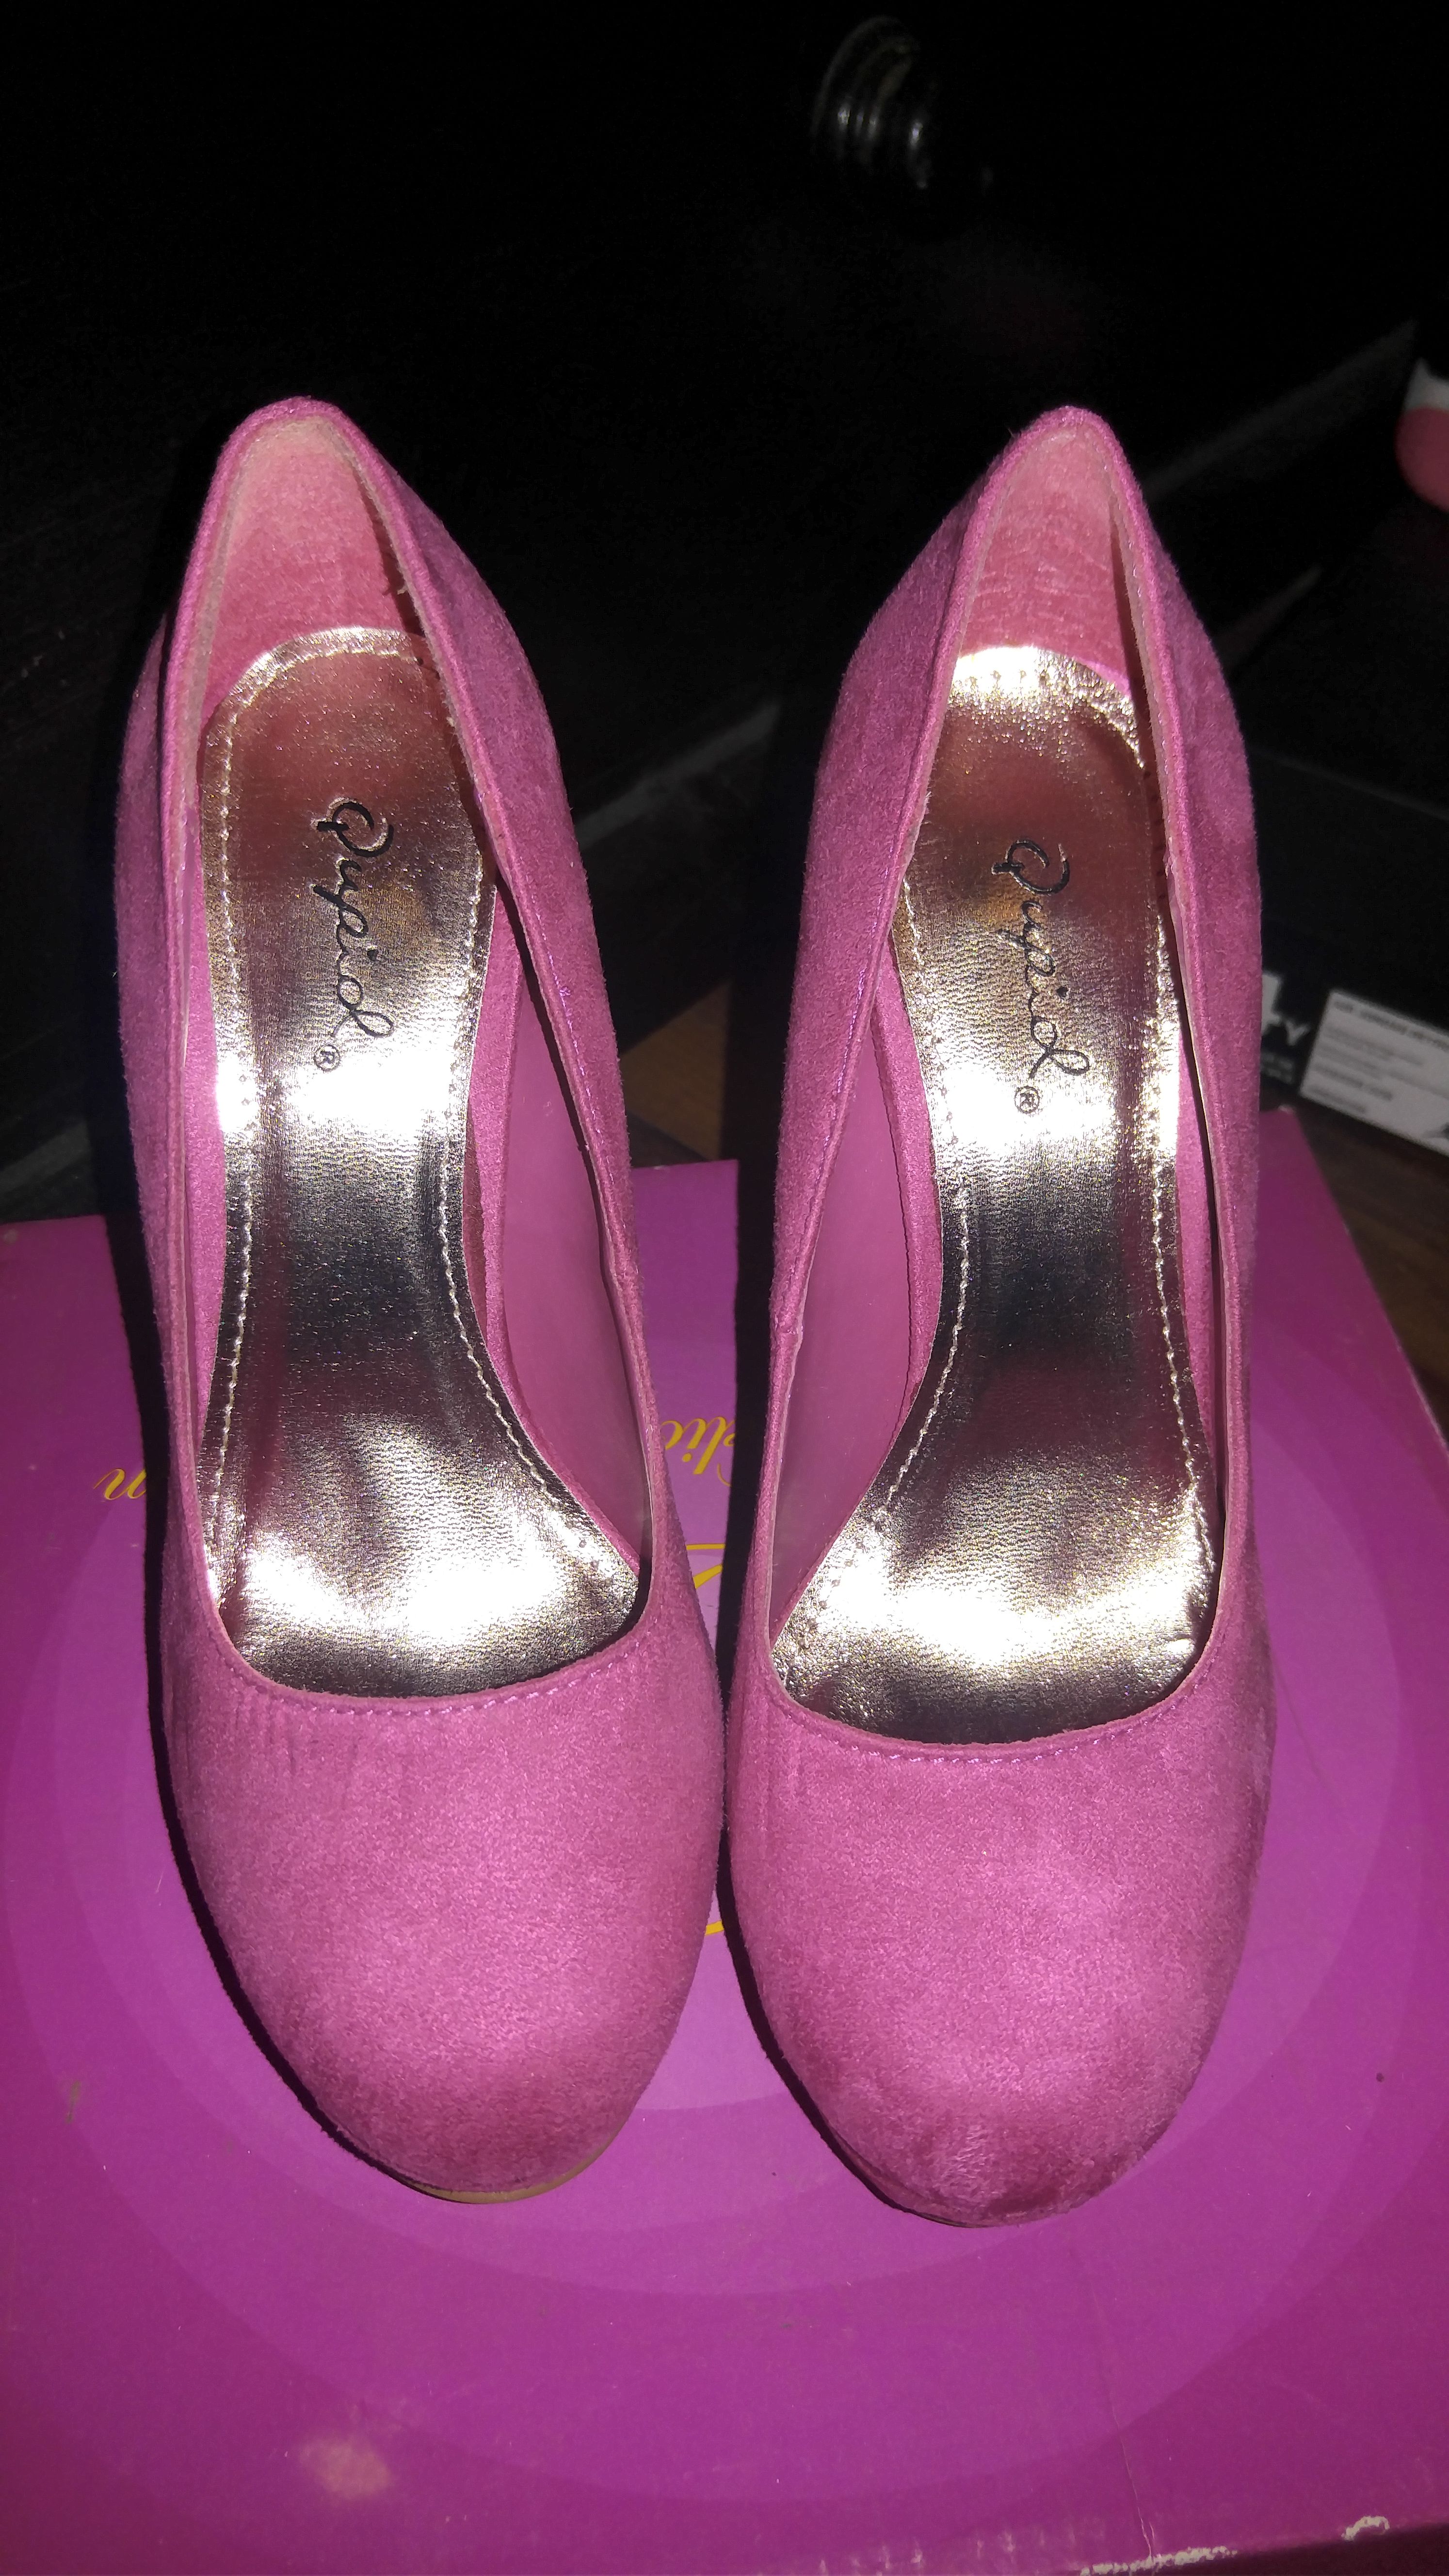 Hot pink Heels